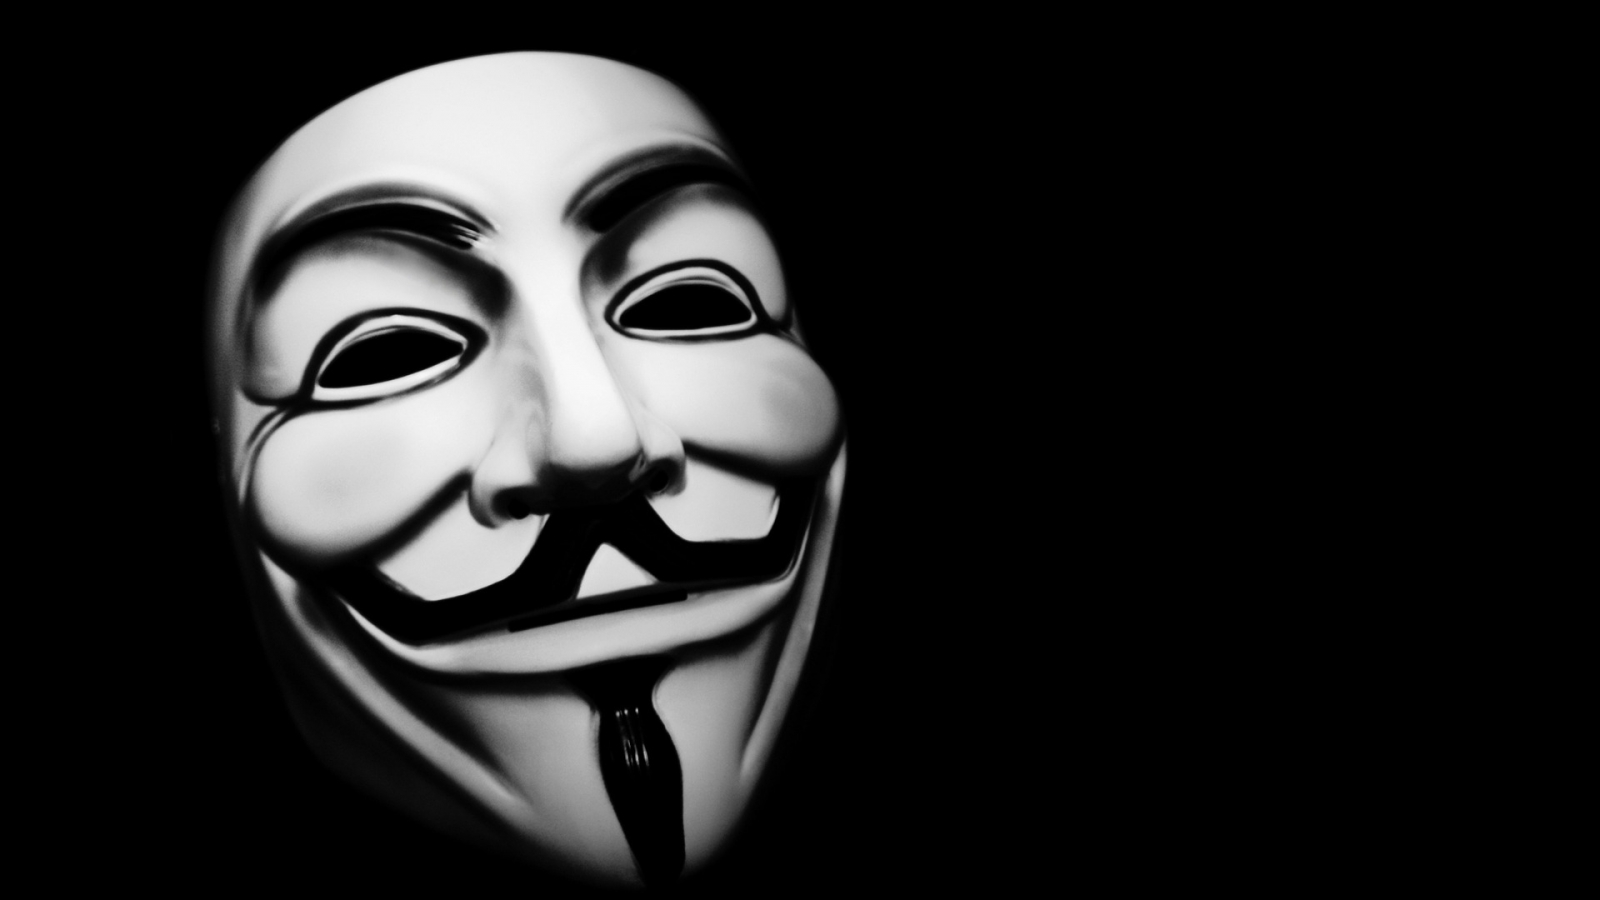 Vendetta Mask for 1600 x 900 HDTV resolution